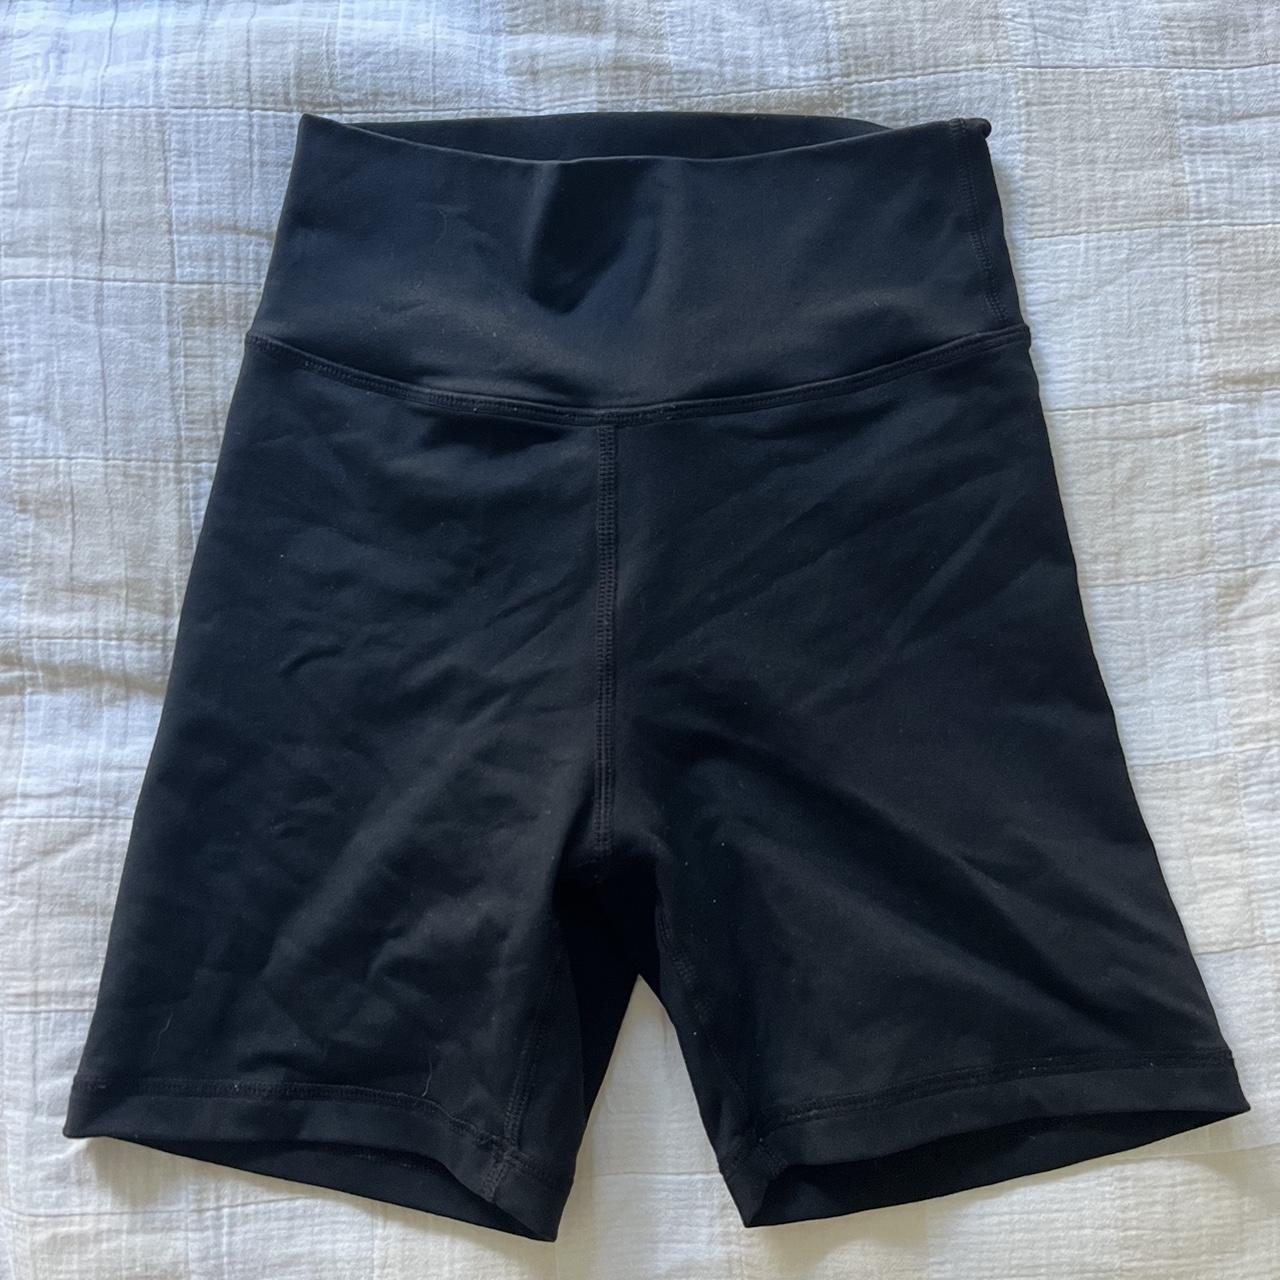 Muscle nation scrunch bum shorts - Depop